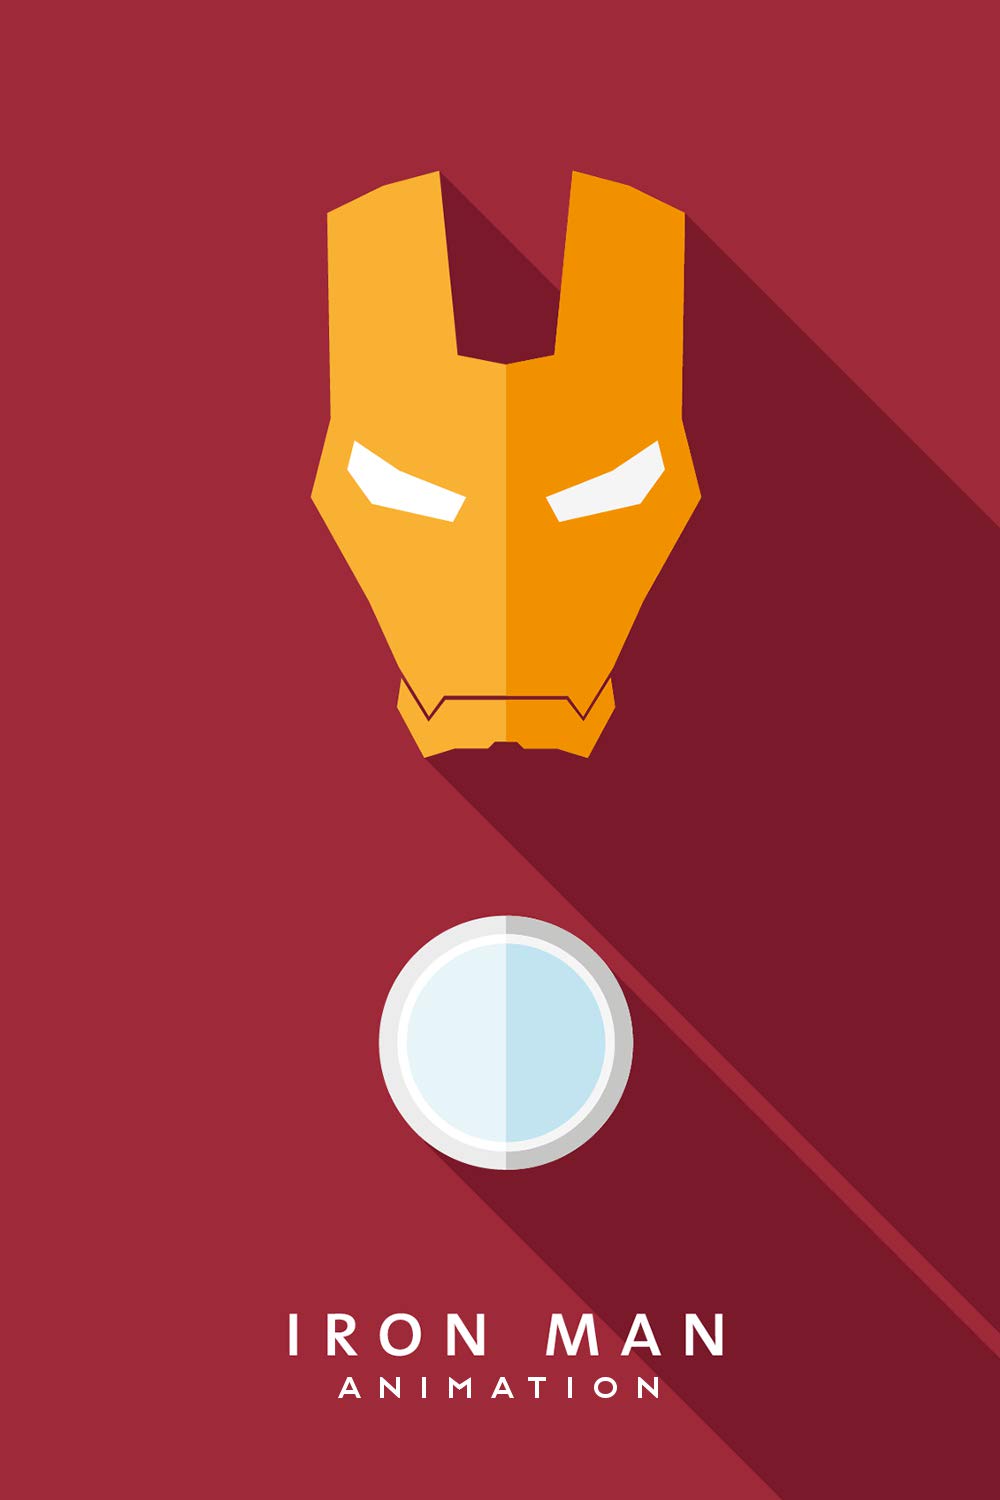 Iron Man: Animation